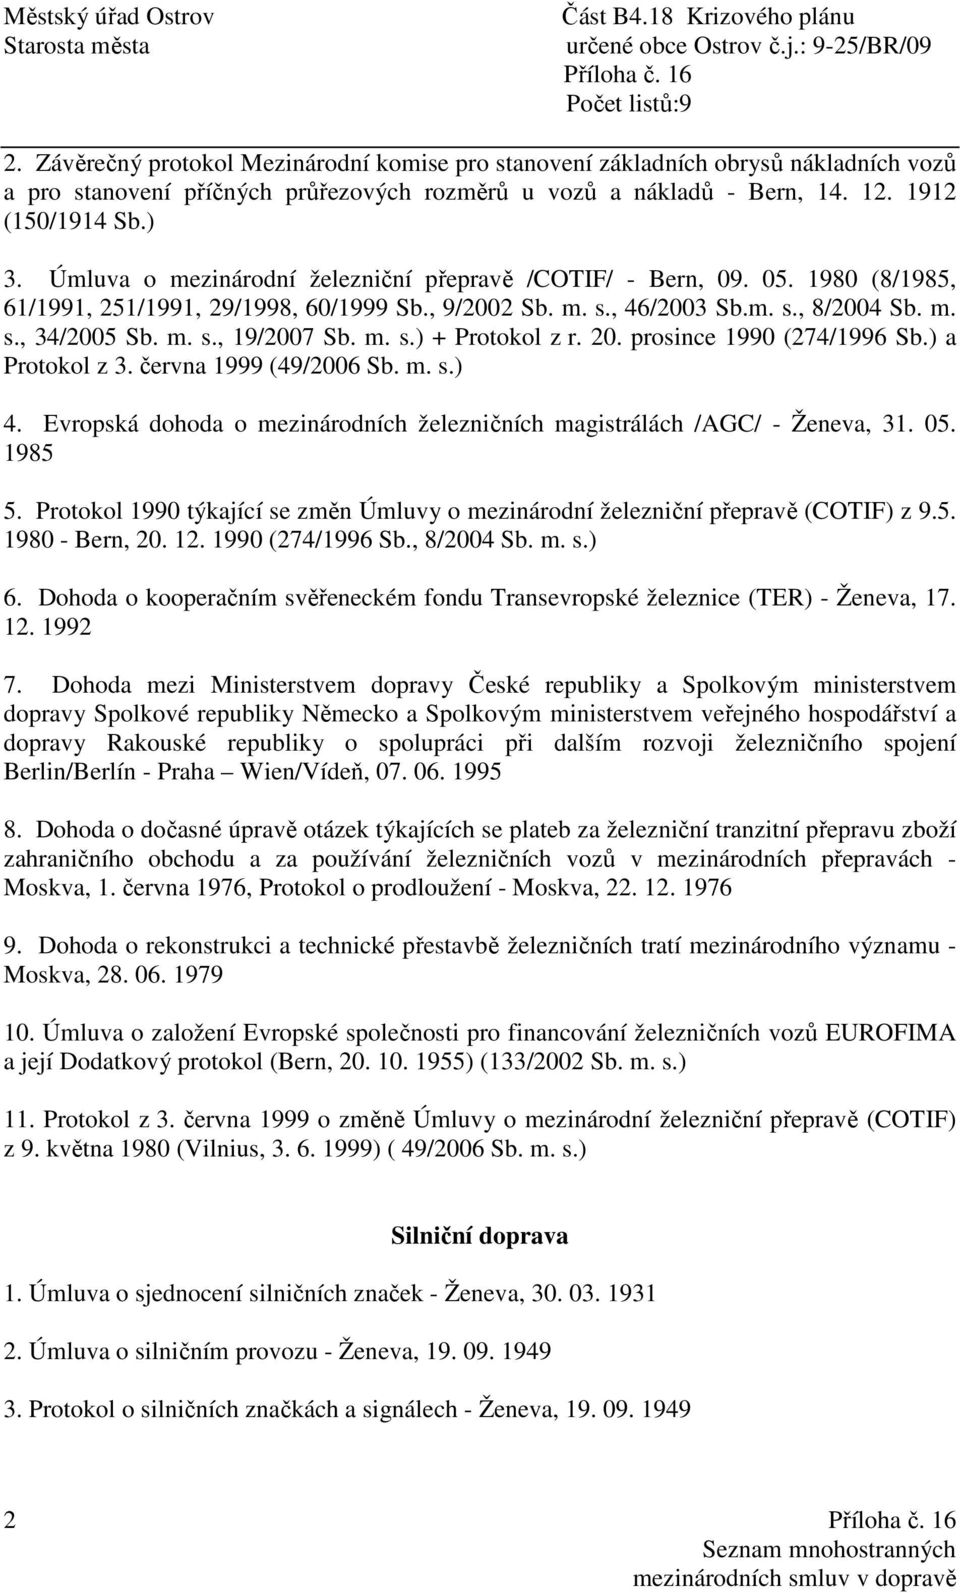 m. s.) + Protokol z r. 20. prosince 1990 (274/1996 Sb.) a Protokol z 3. června 1999 (49/2006 Sb. m. s.) 4. Evropská dohoda o mezinárodních železničních magistrálách /AGC/ - Ženeva, 31. 05. 1985 5.